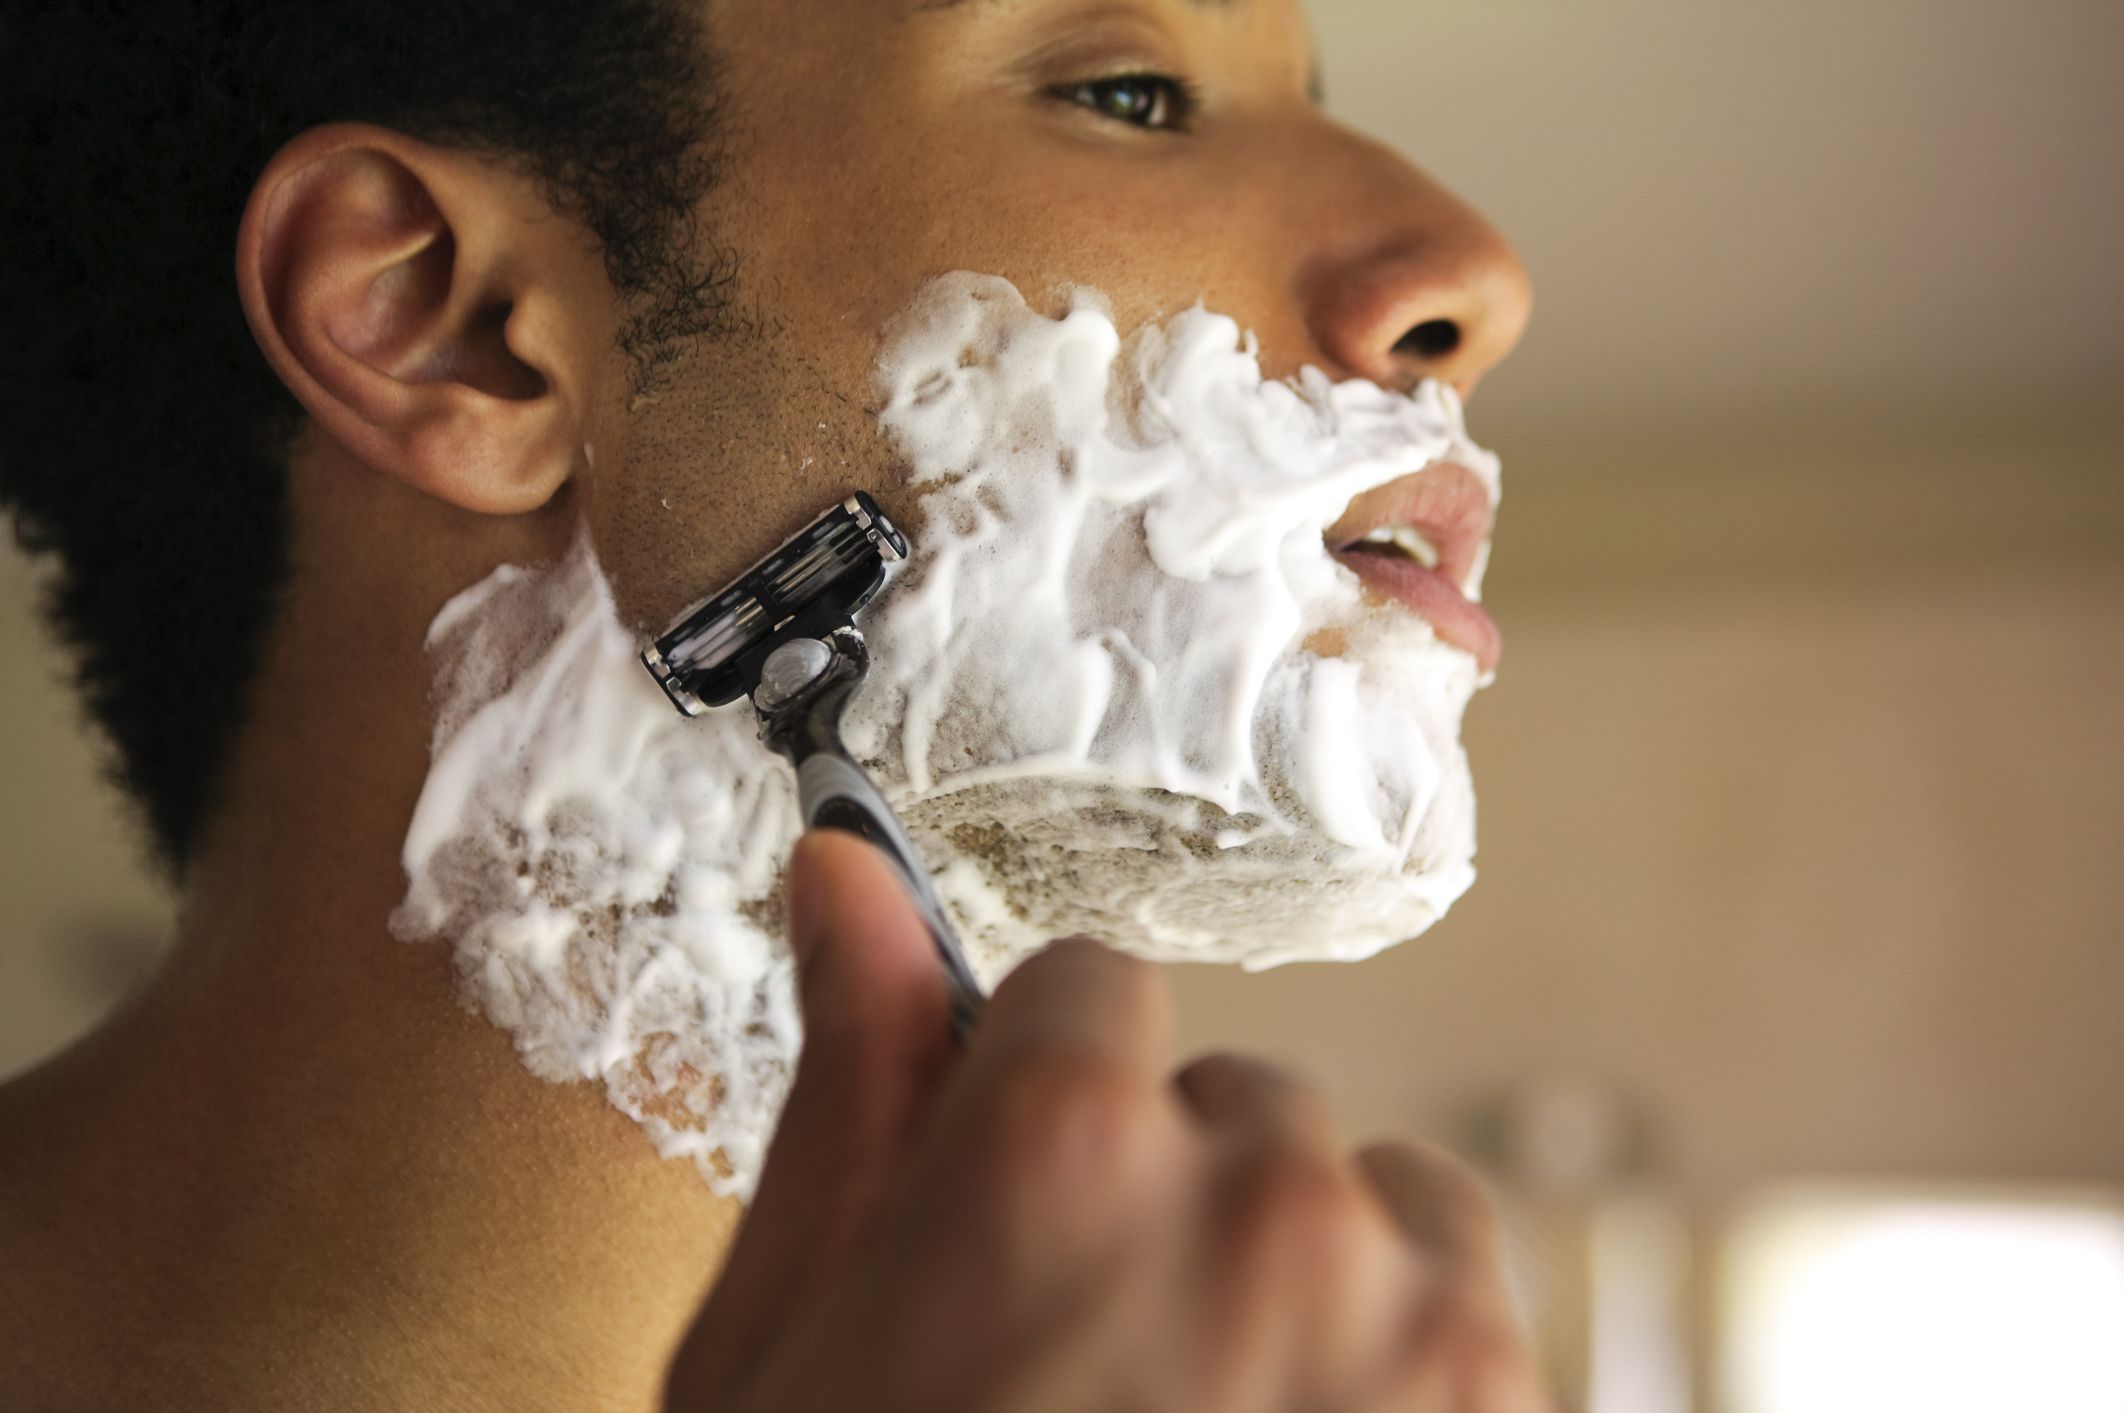 Что можно брить. Пена джилет чистое бритье. Мужчина бреется. Пена для бритья для мужчин. Мужик в пену для бритья.